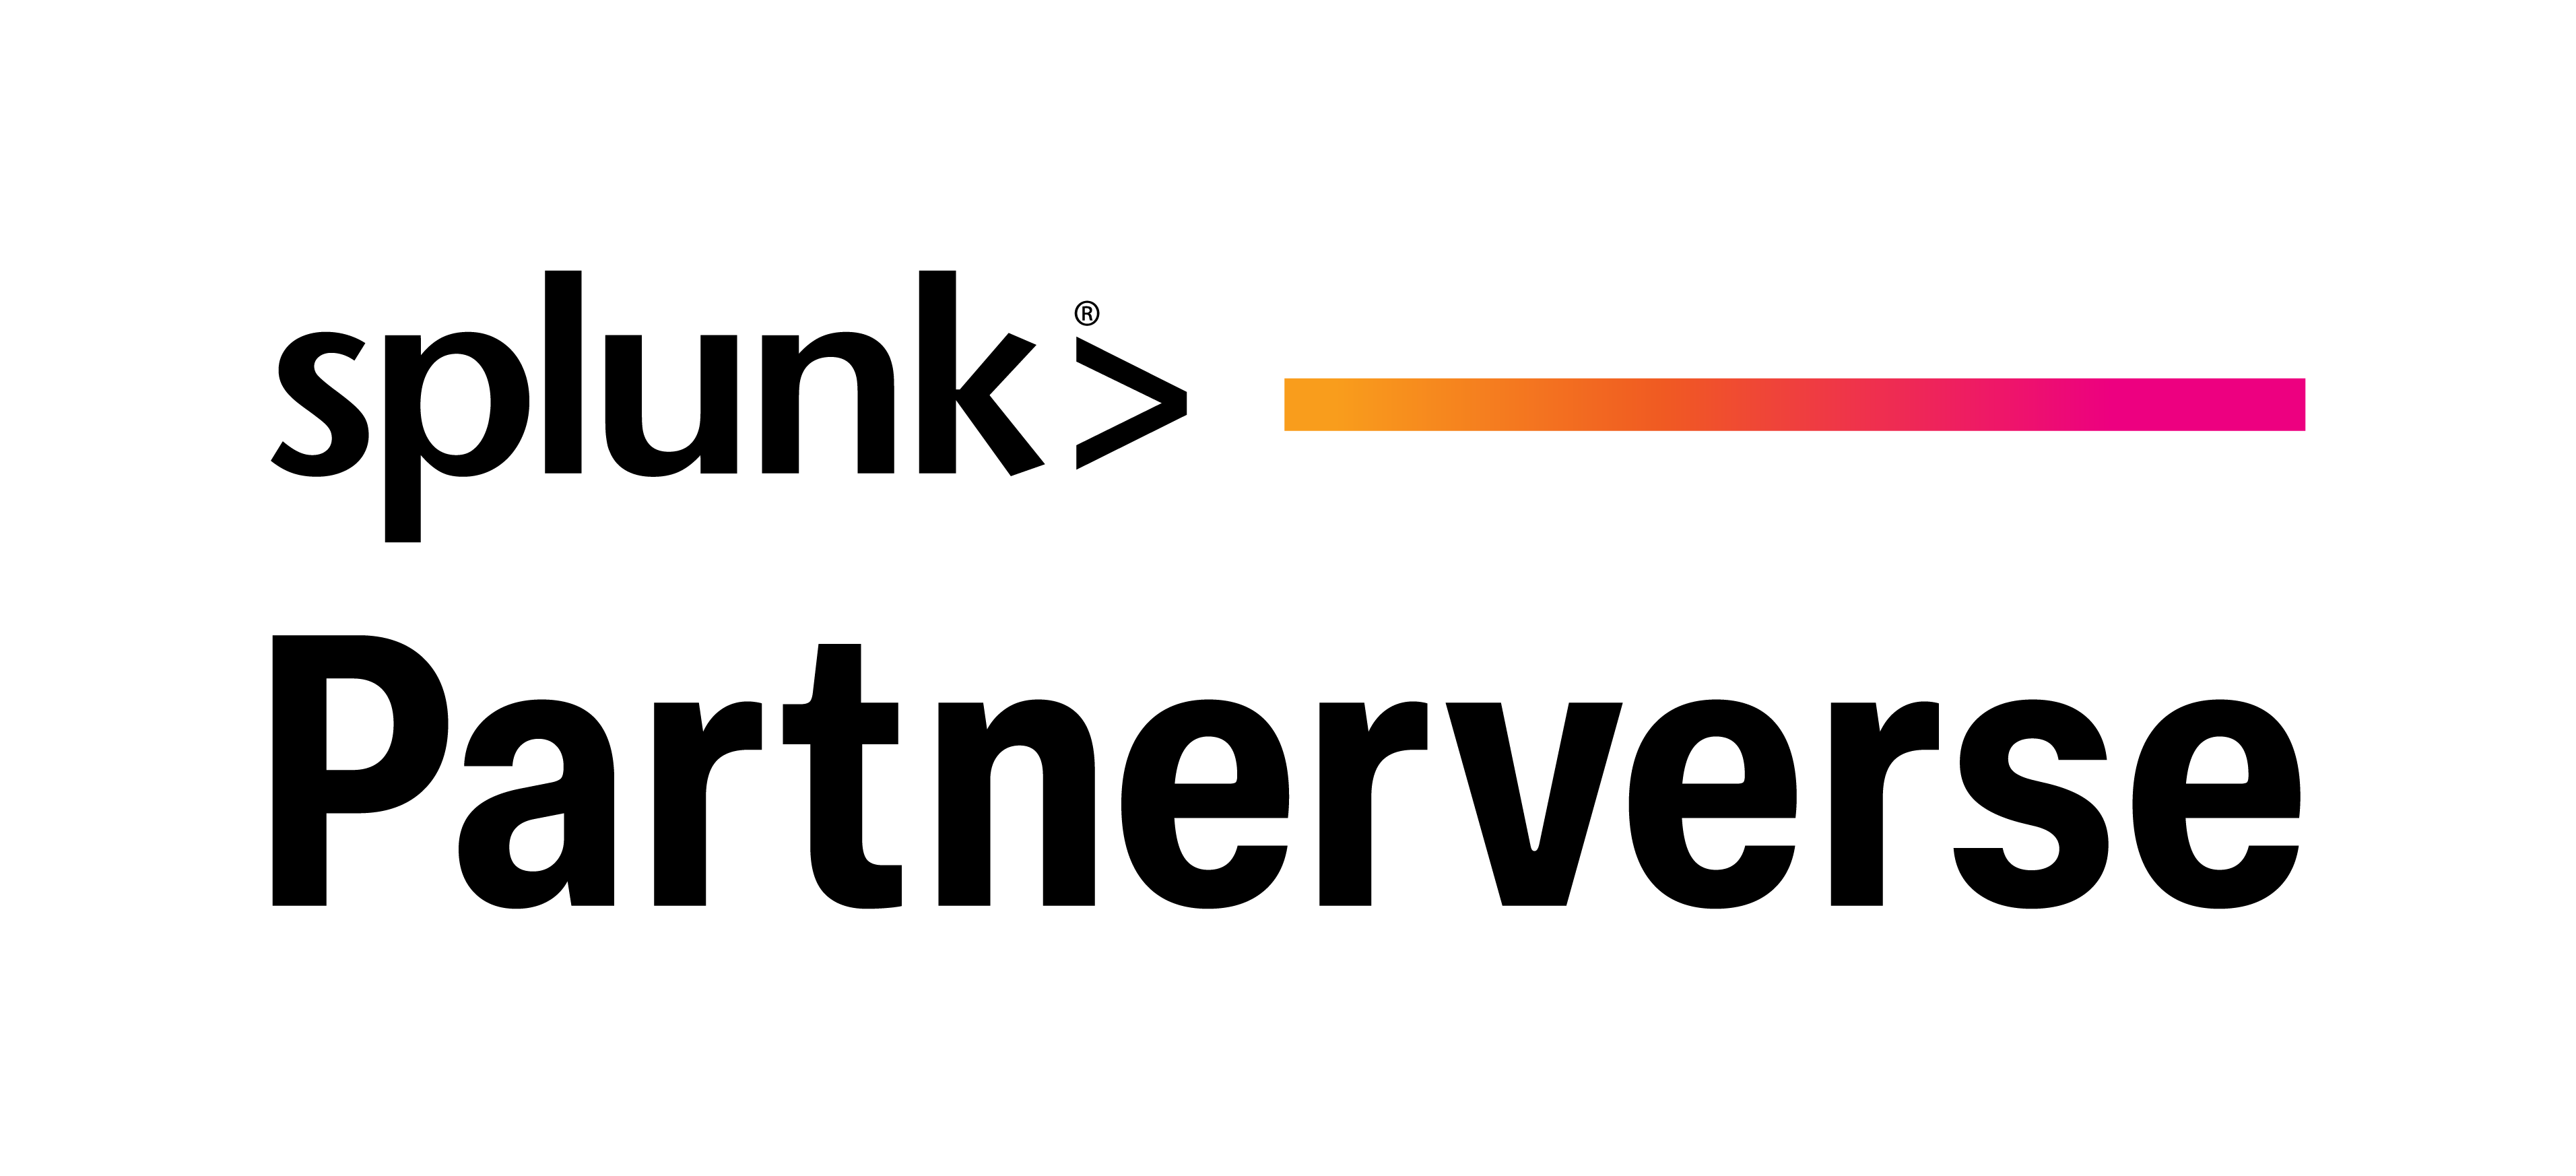 splunk-partnerverse-logo-vert-cl-rgb